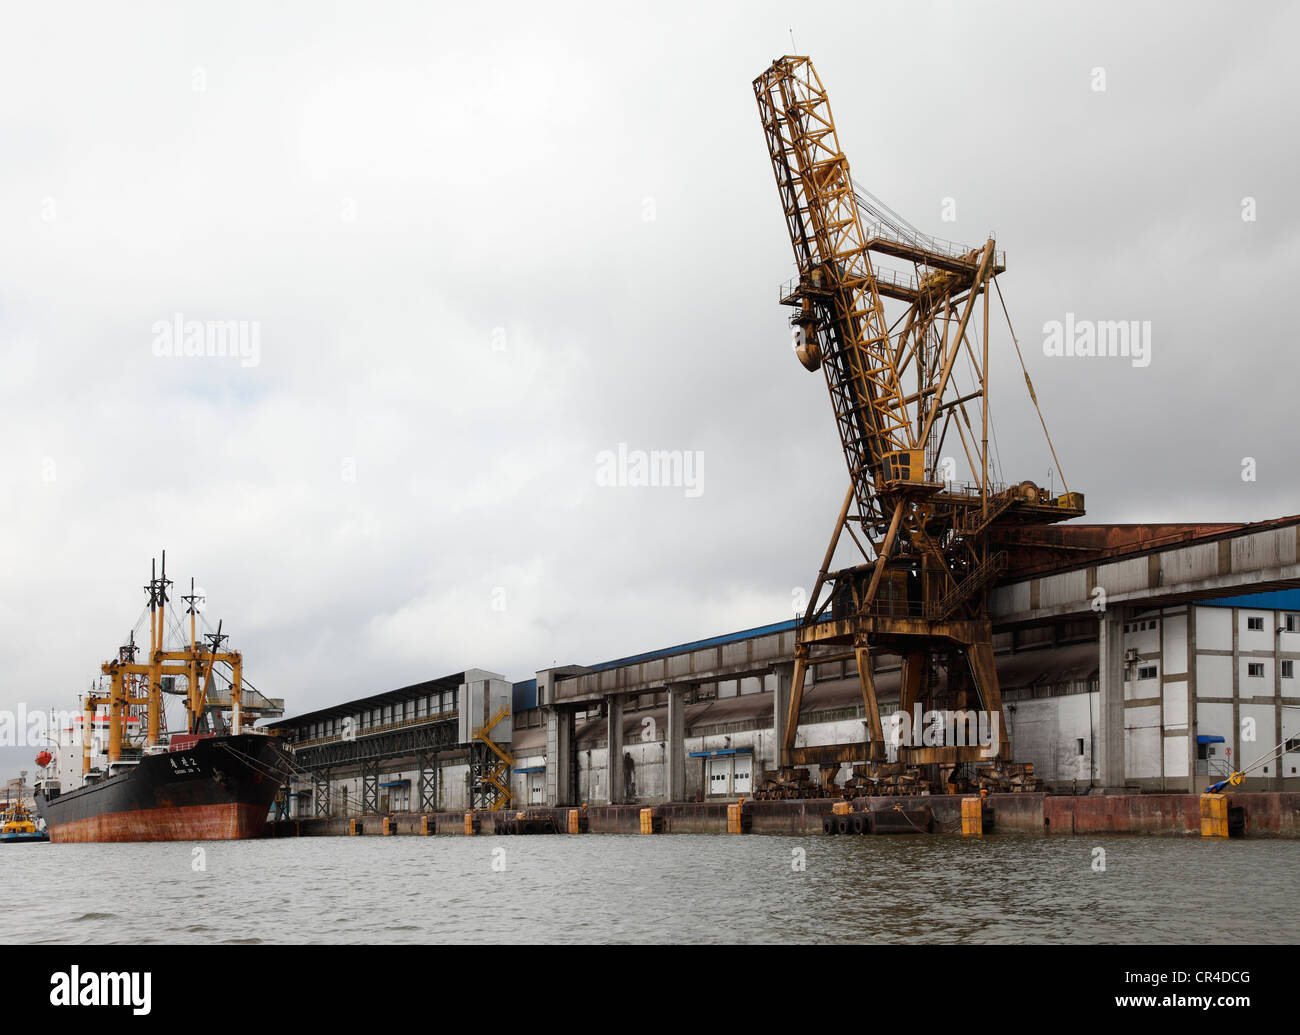 Container ship in the port of Paranaguá, Porto de Paranaguá, Paraná, Brazil, South America Stock Photo